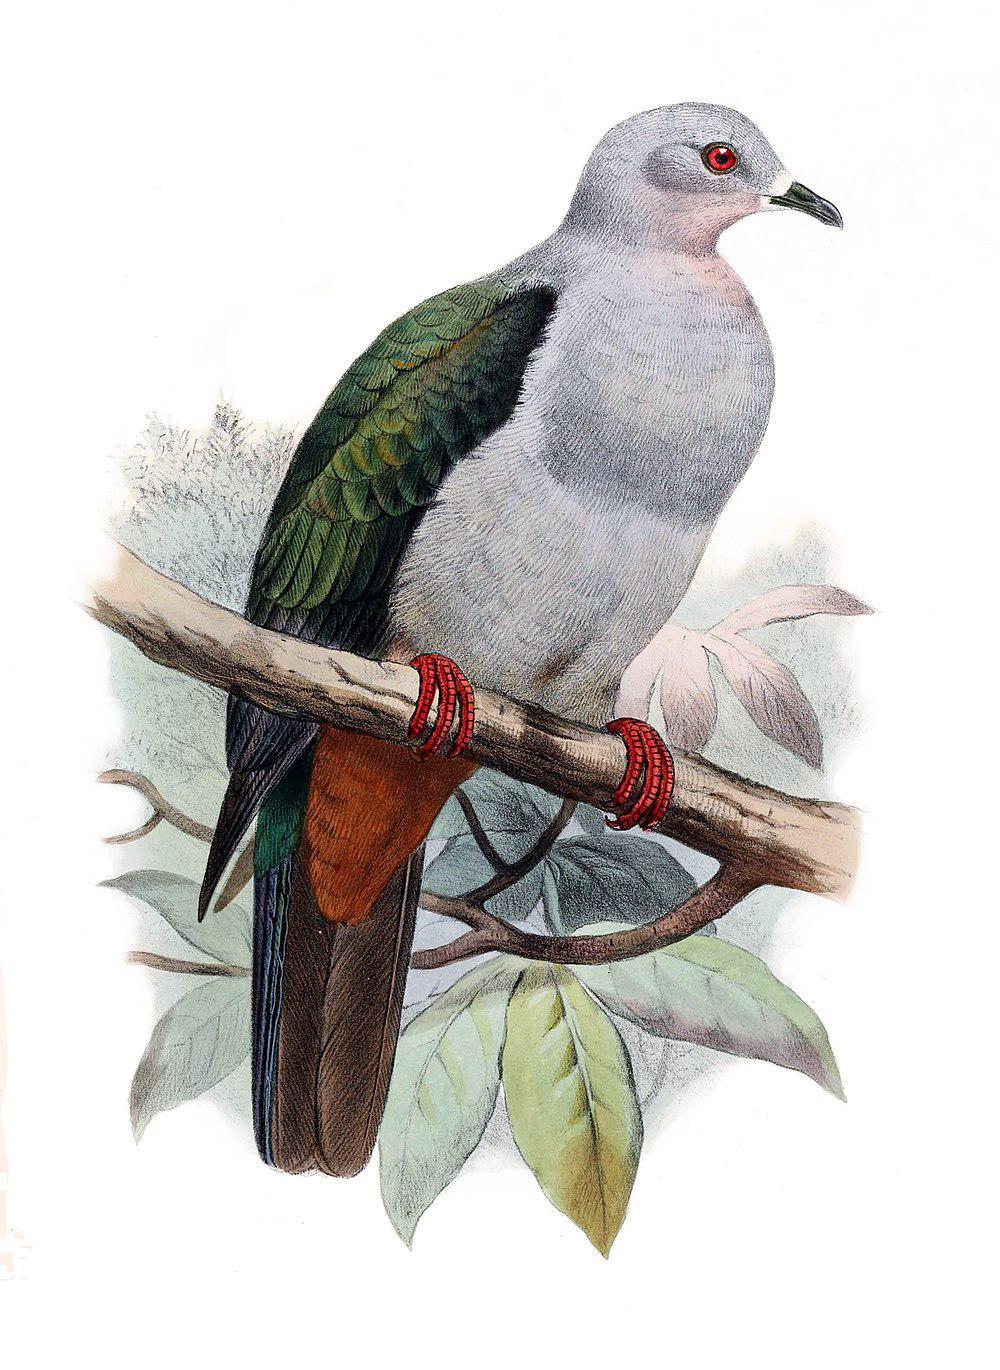 灰皇鸠 / Island Imperial Pigeon / Ducula pistrinaria